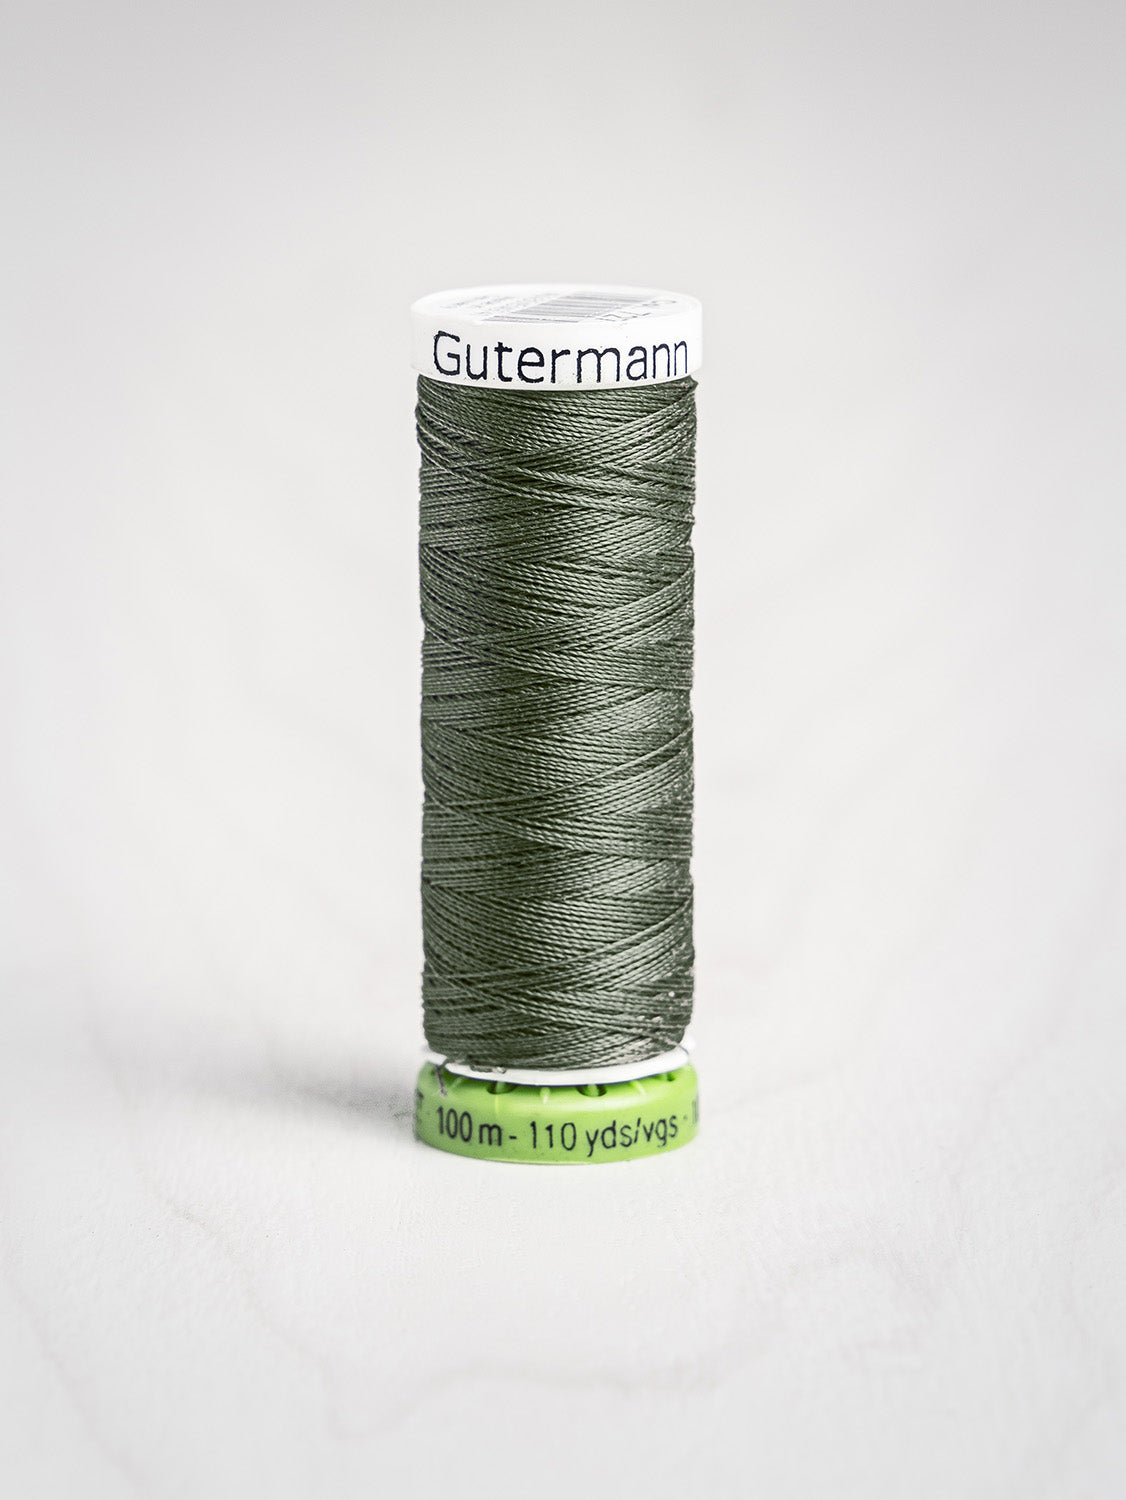 Matching Thread / Gutermann 100M